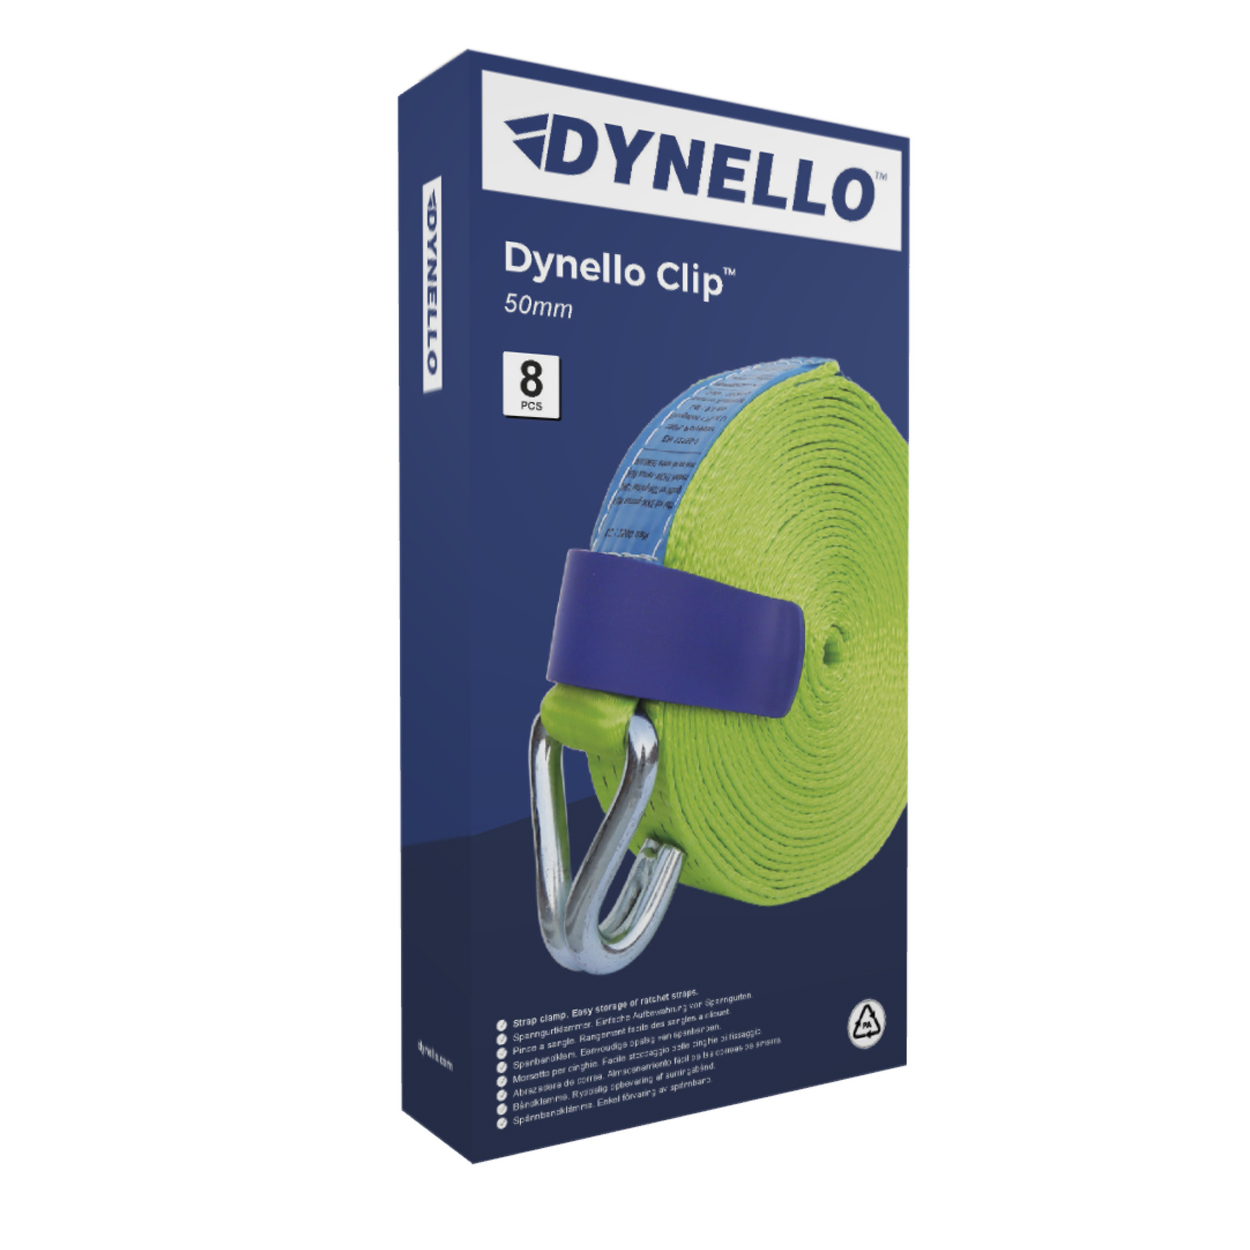 DYNELLO® Clip, 50 mm, Plastic, Strap Clamp